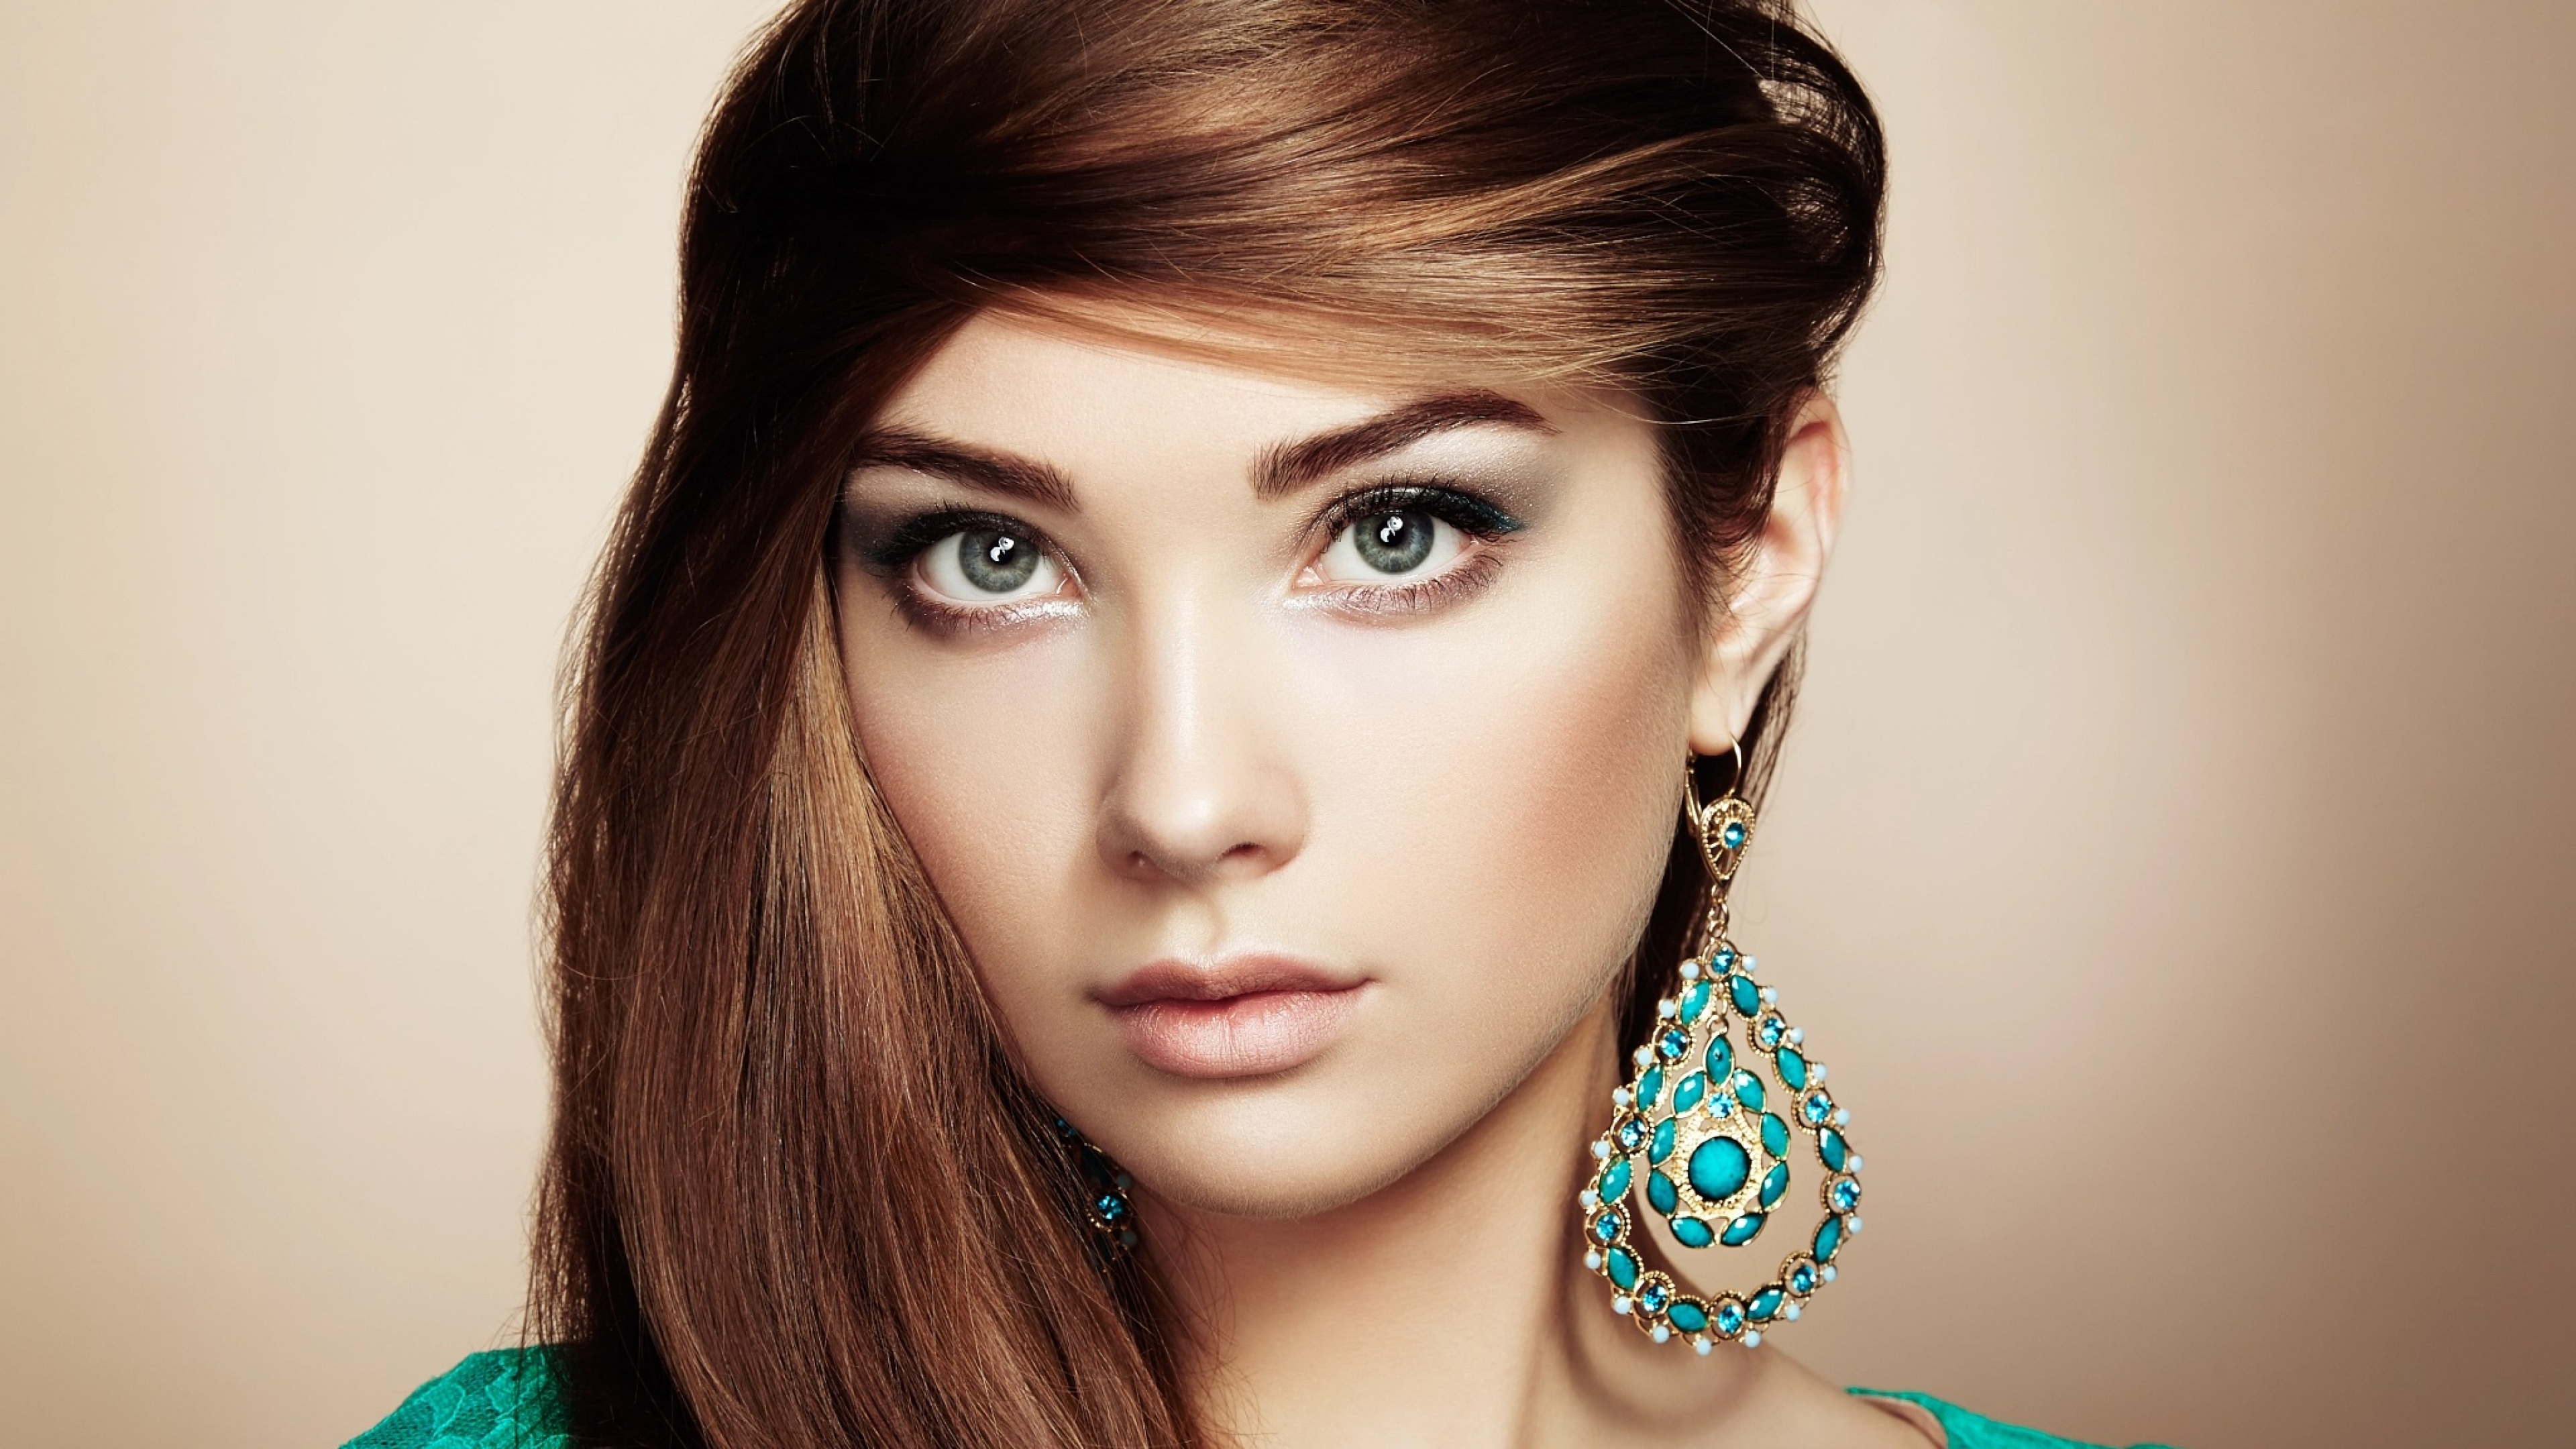 Красивая девушка с зелеными глазами. Sarah Allag фотомодель. Девушка модель. Шатенка с голубыми глазами.